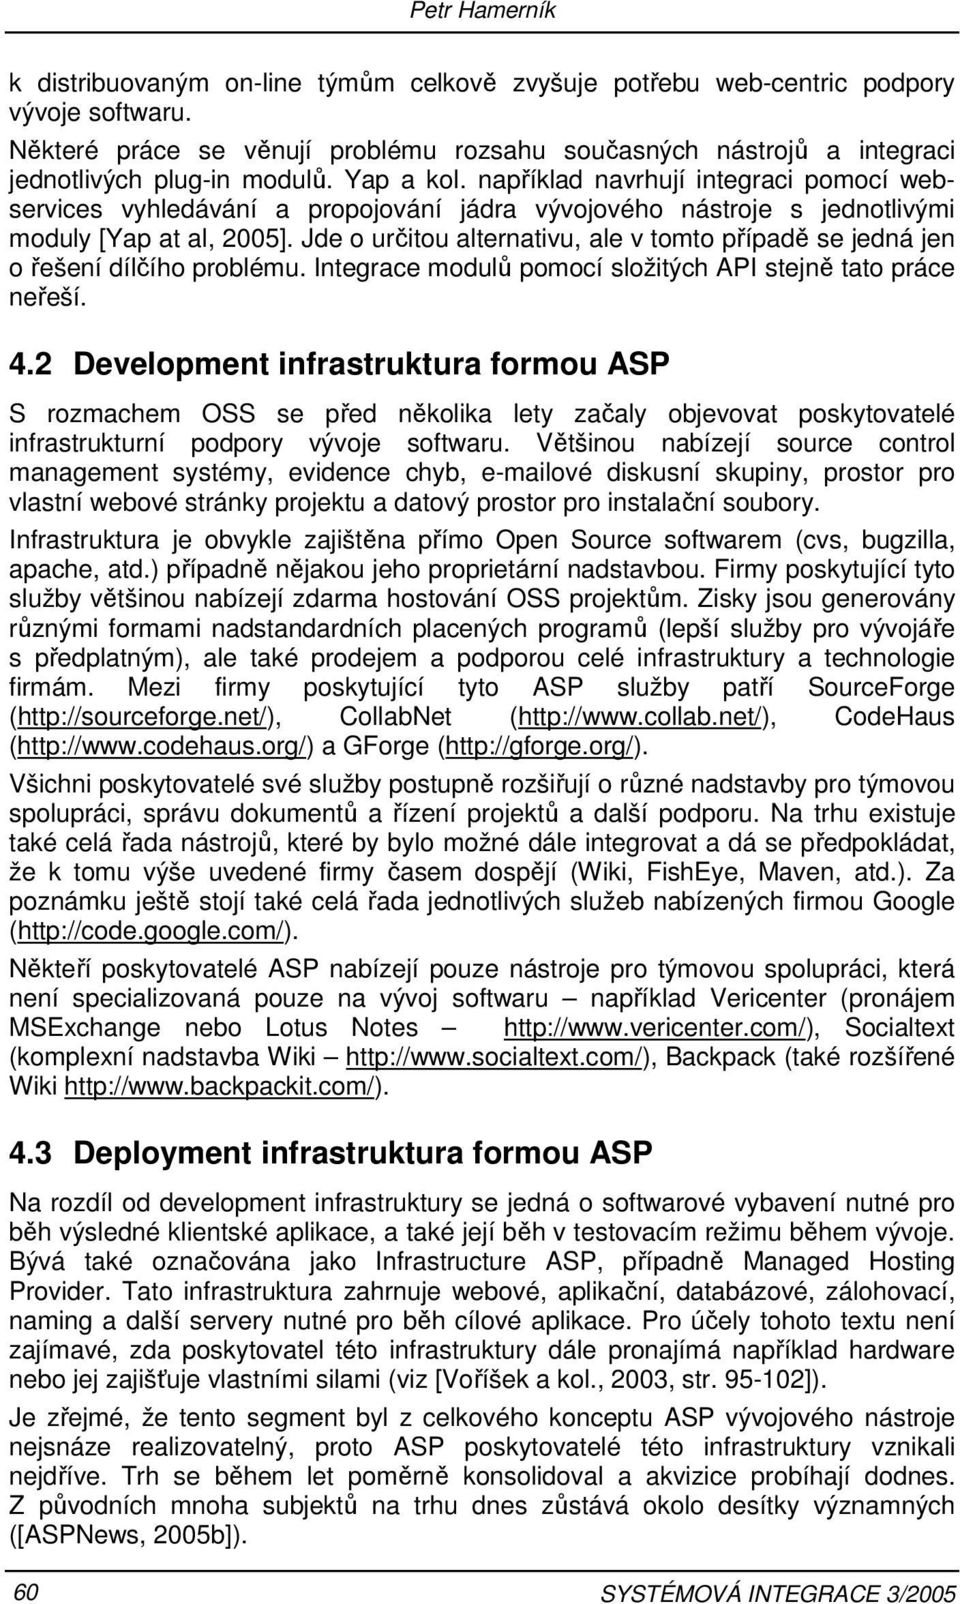 například navrhují integraci pomocí webservices vyhledávání a propojování jádra vývojového nástroje s jednotlivými moduly [Yap at al, 2005].